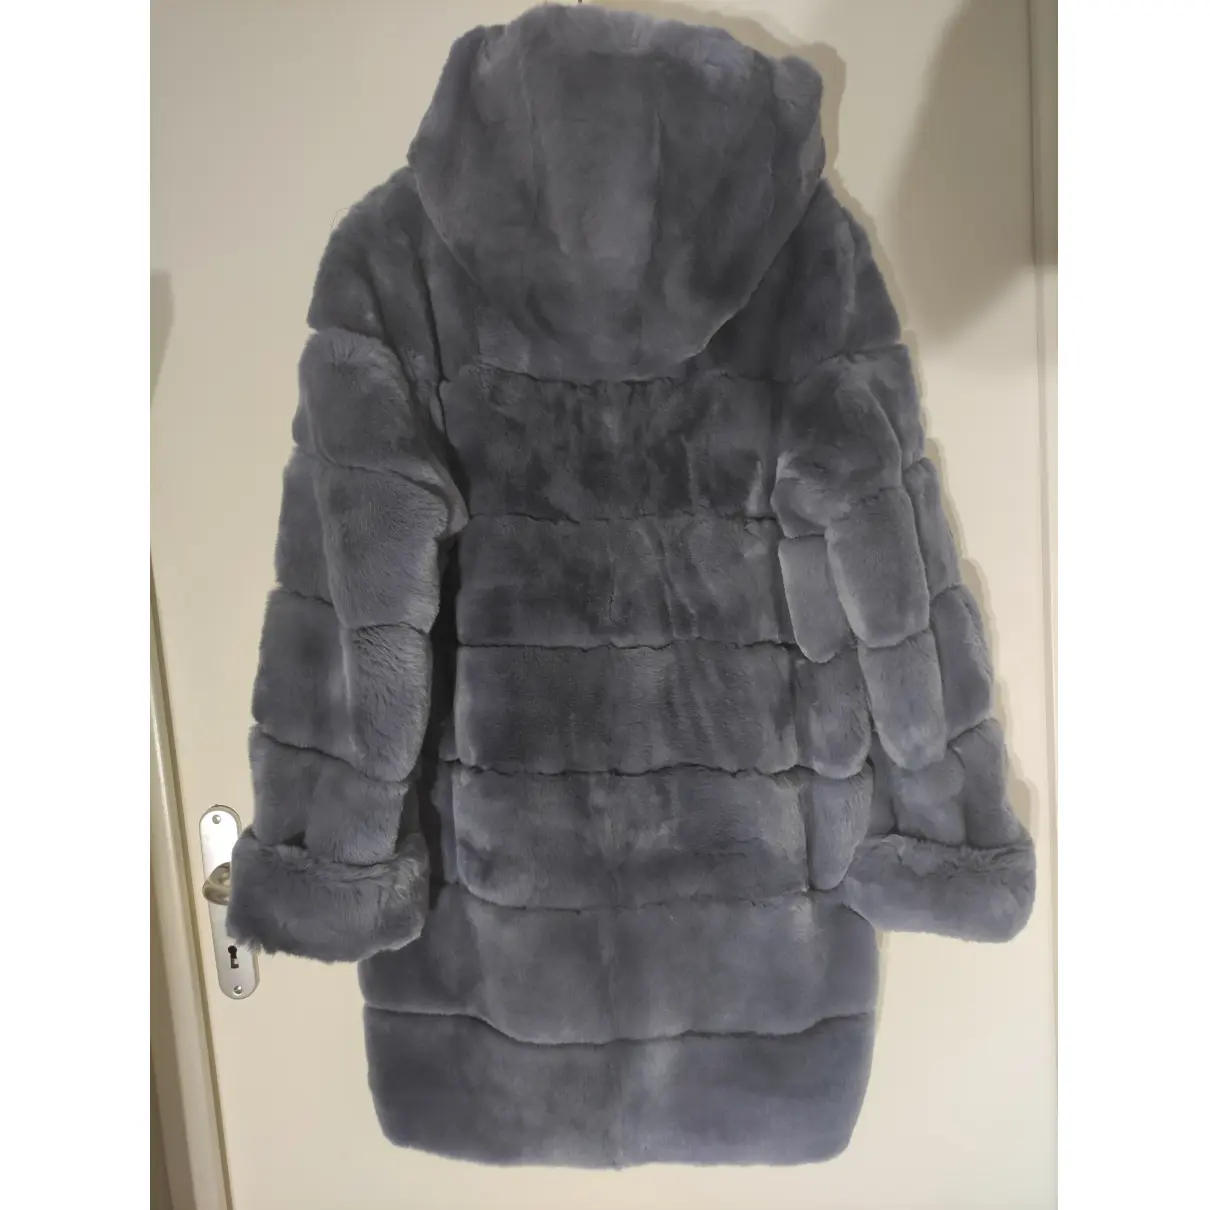 Buy Georges Rech Rabbit coat online